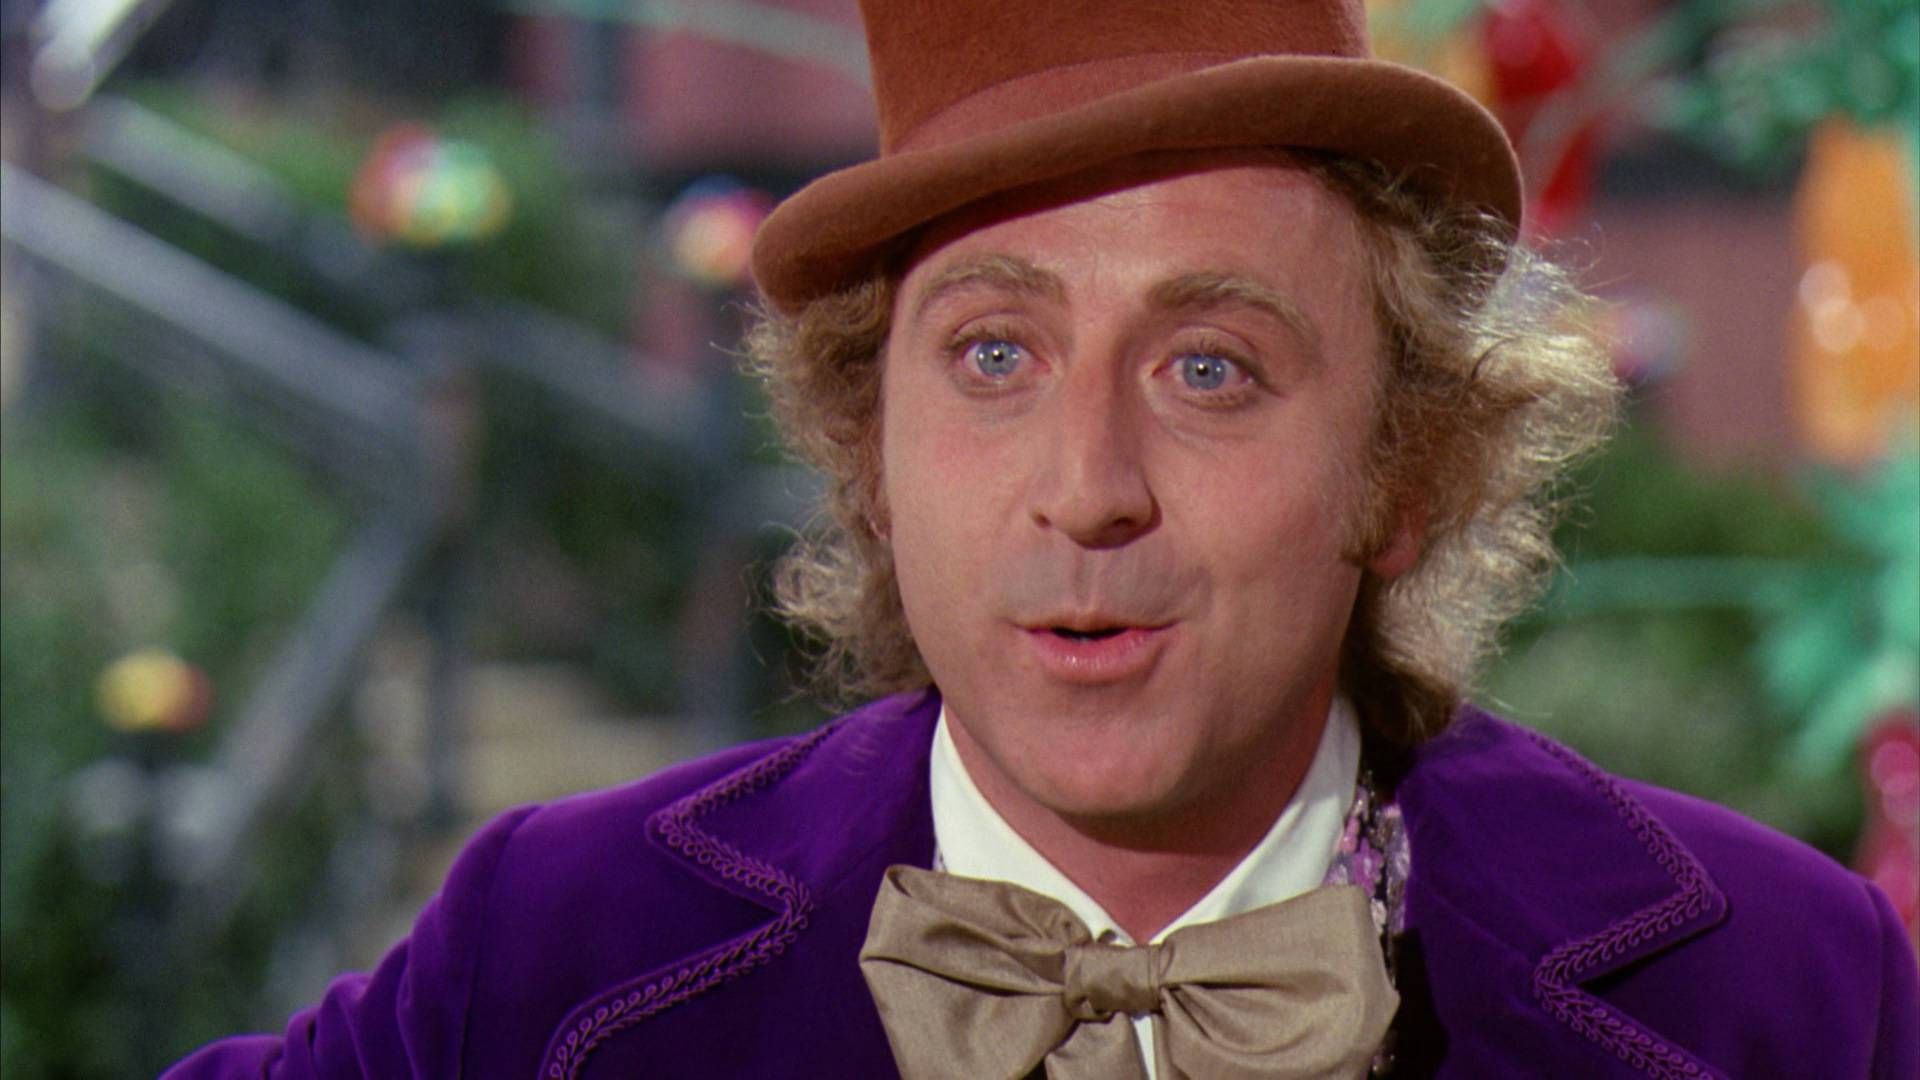 Choses que nous avons vues aujourd'hui : joyeux anniversaire à Willy Wonka et à la chocolaterie